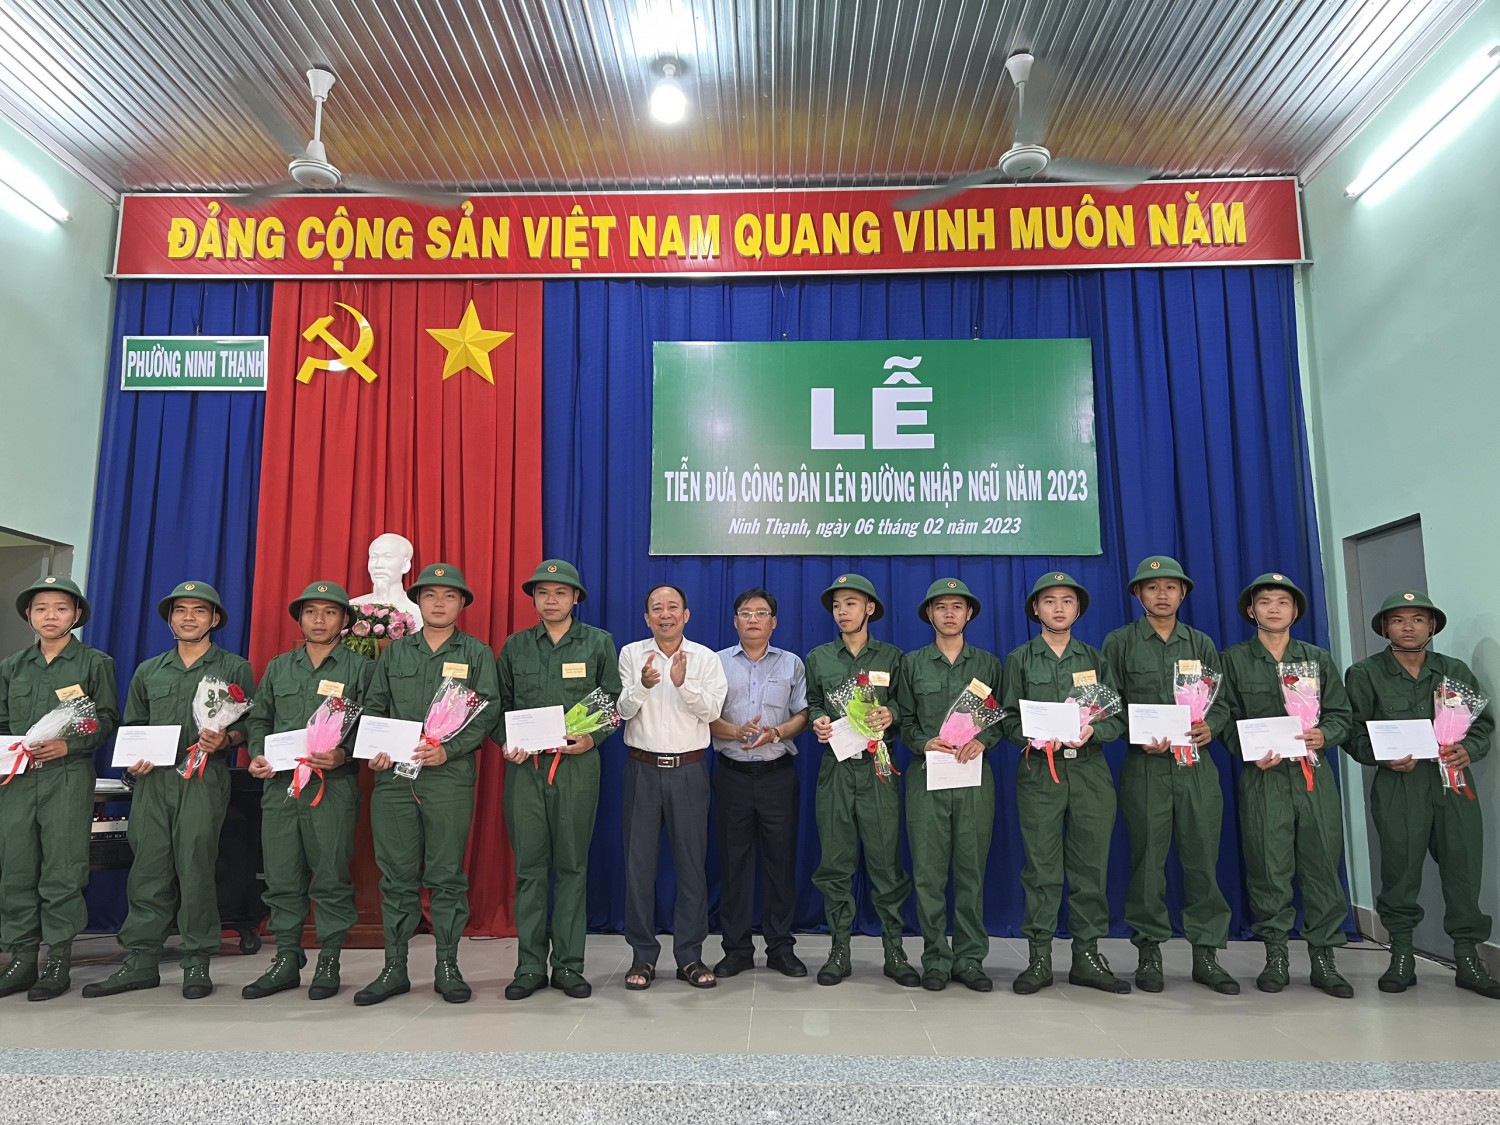 Hội đồng nghĩa vụ quân sự phường Ninh Thạnh tổ chức lễ tiễn đưa công dân lên đường nhập ngũ năm 2023.